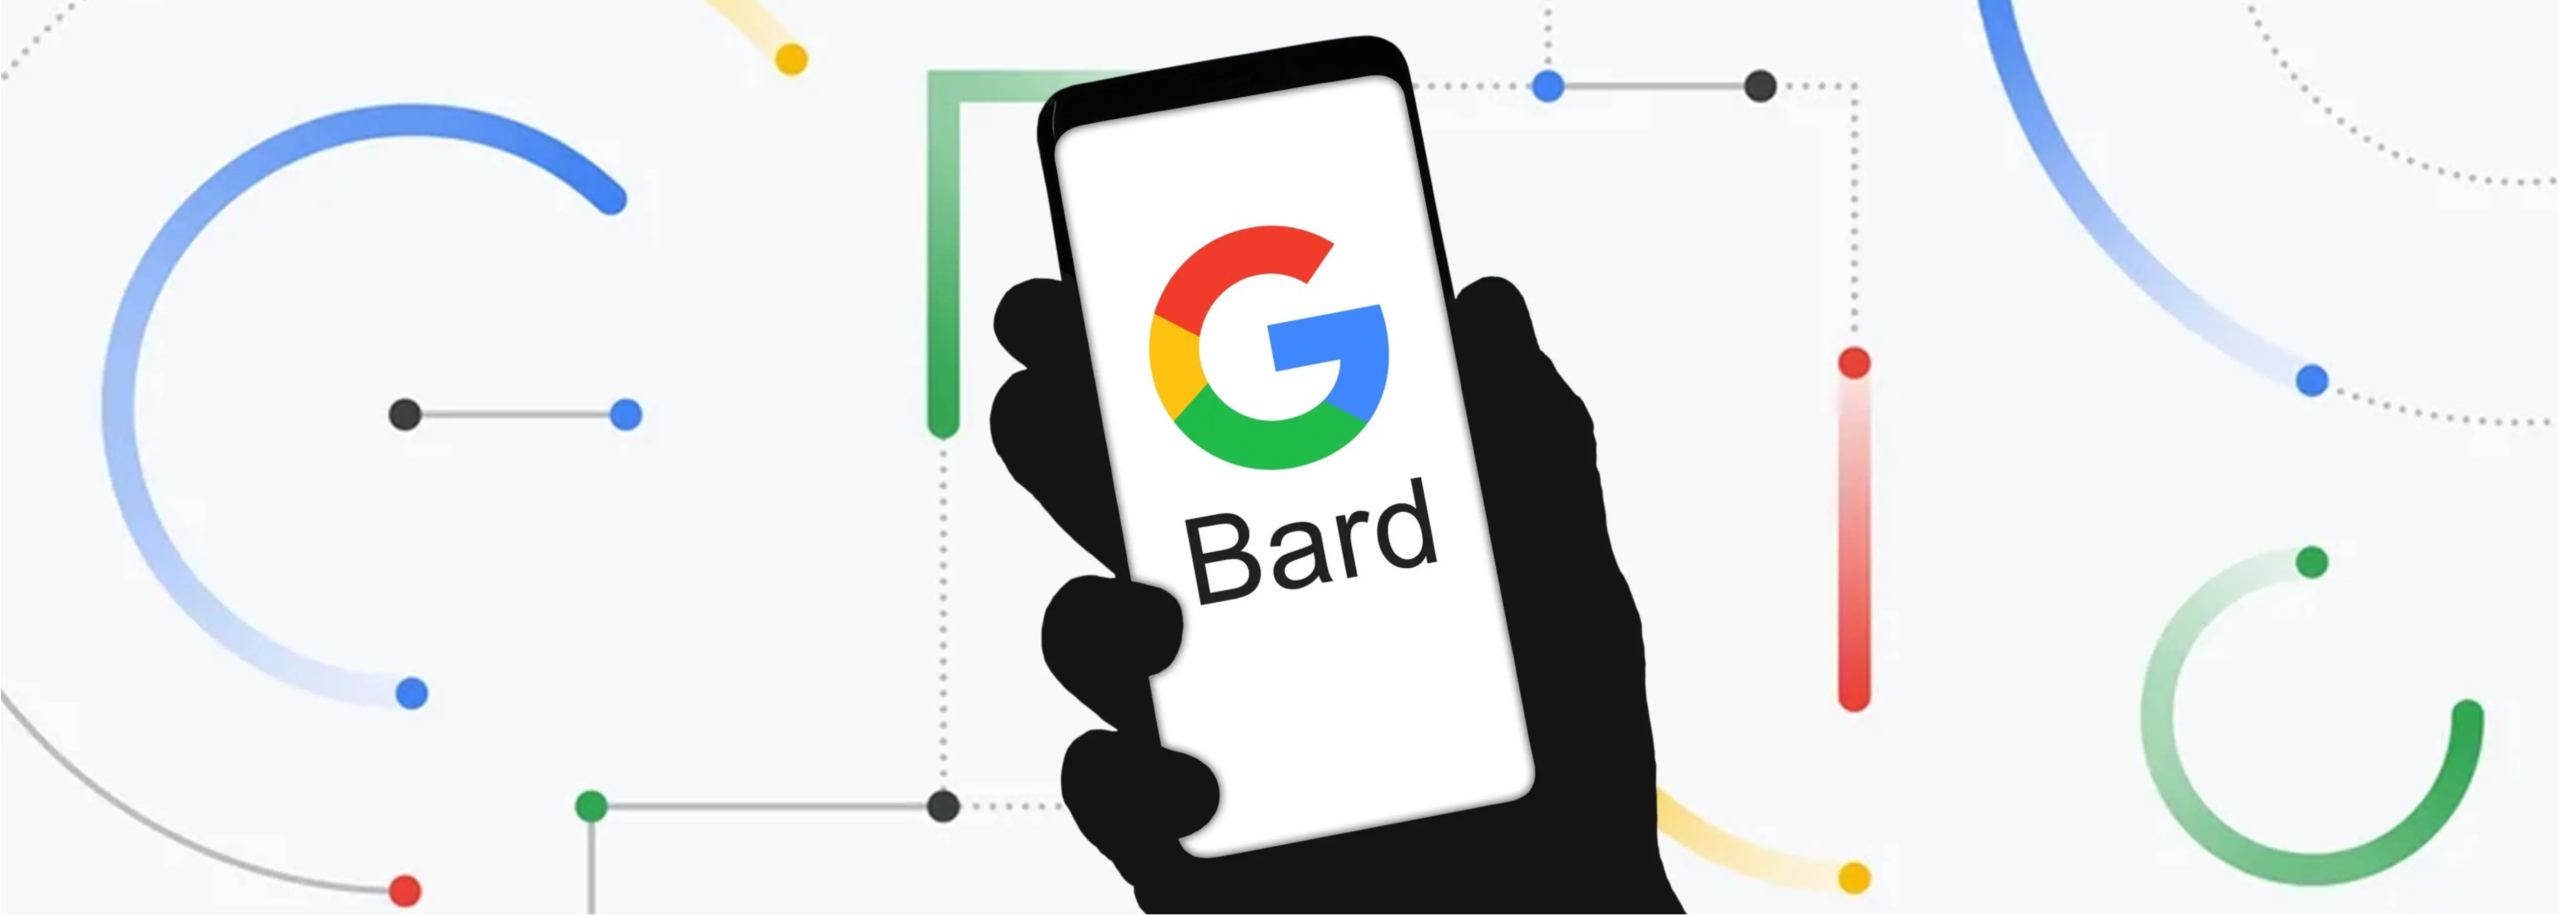 Google Bard Kini Bisa Diajak Berbahasa Indonesia